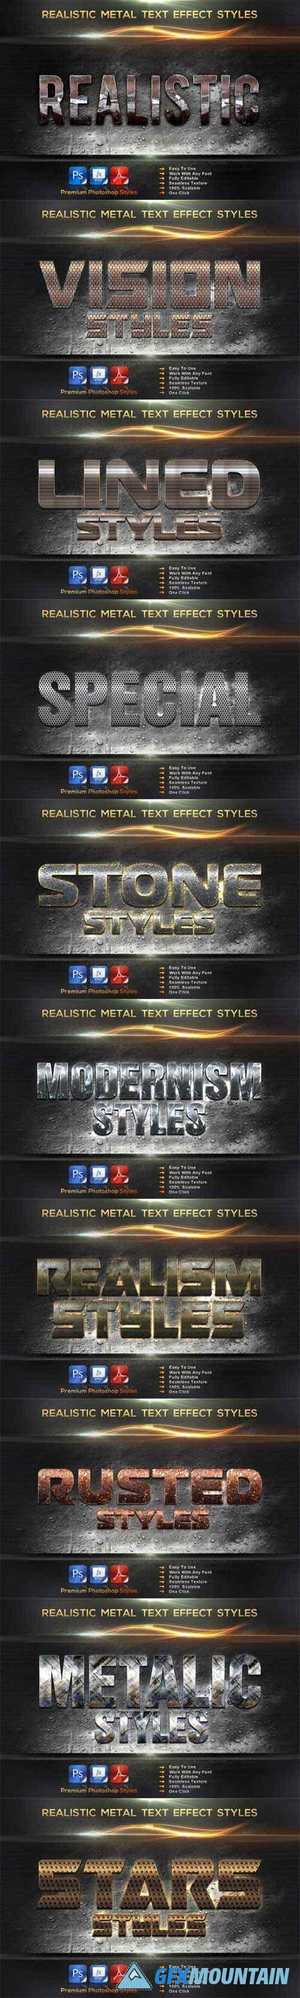 Realistic Metal Styles Bundle